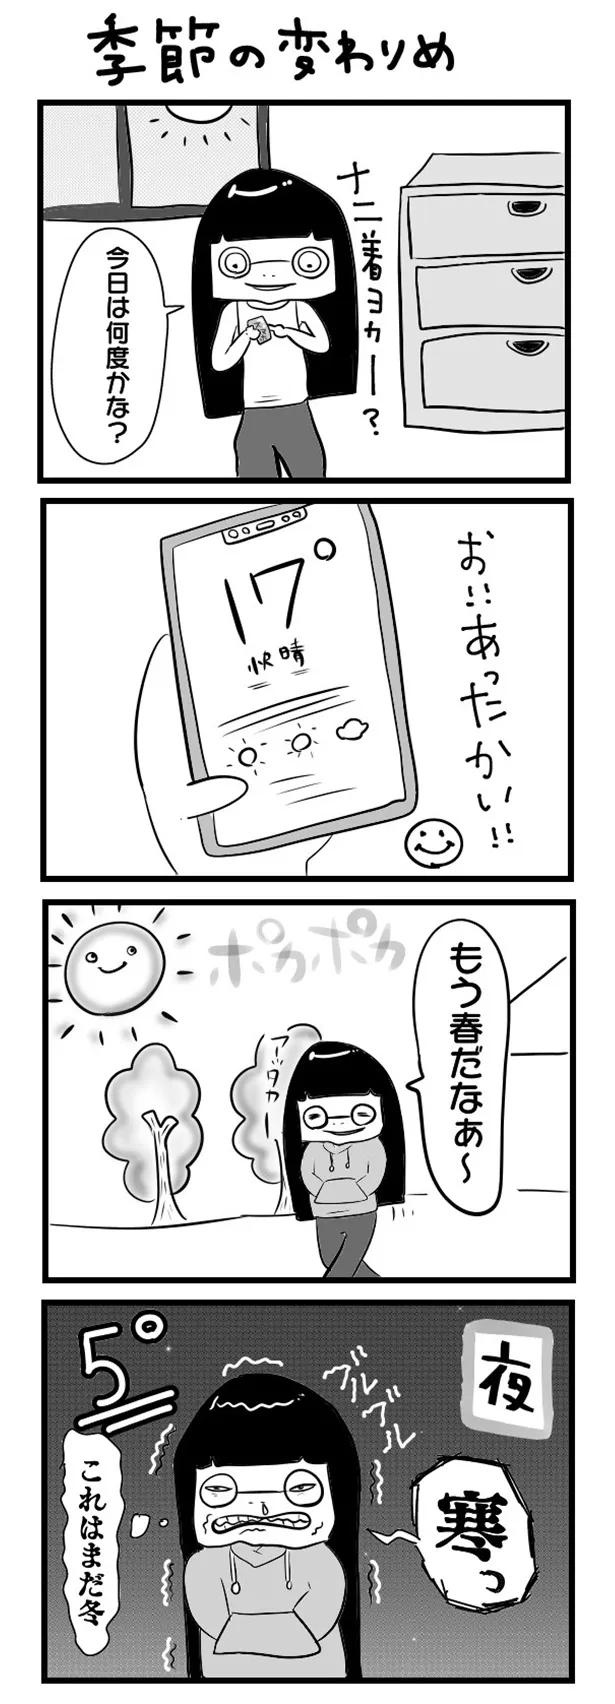 「“社不ドル”ハピラキ日記」(15)より　「季節の変わりめ」